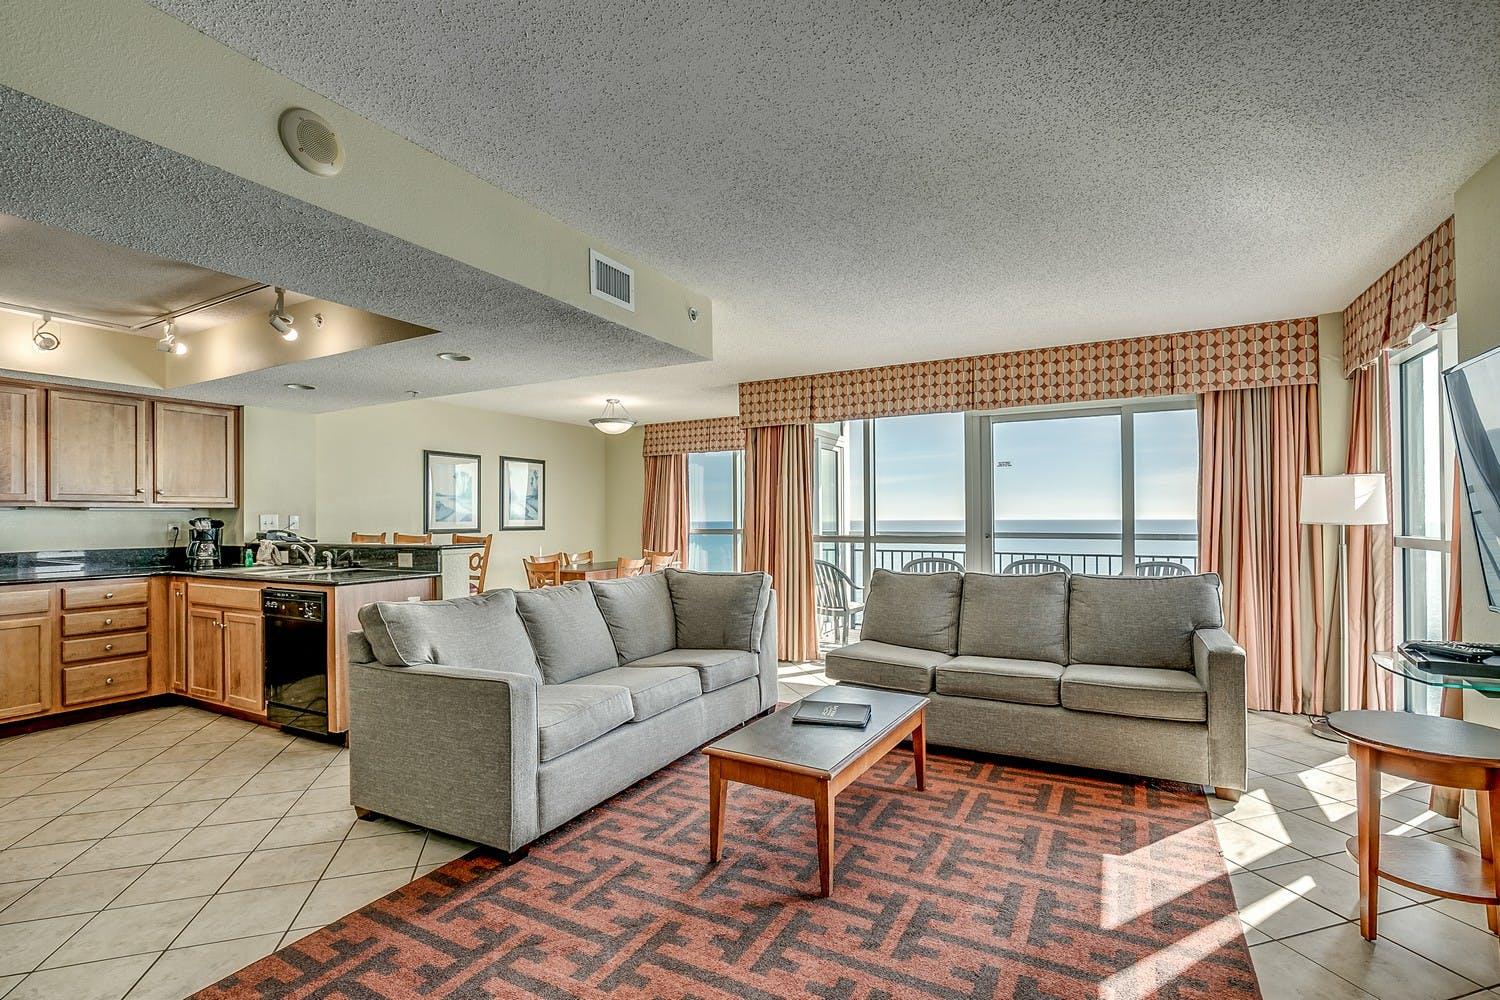 Bay View on the Boardwalk - 4 Bedroom Oceanfront Condo